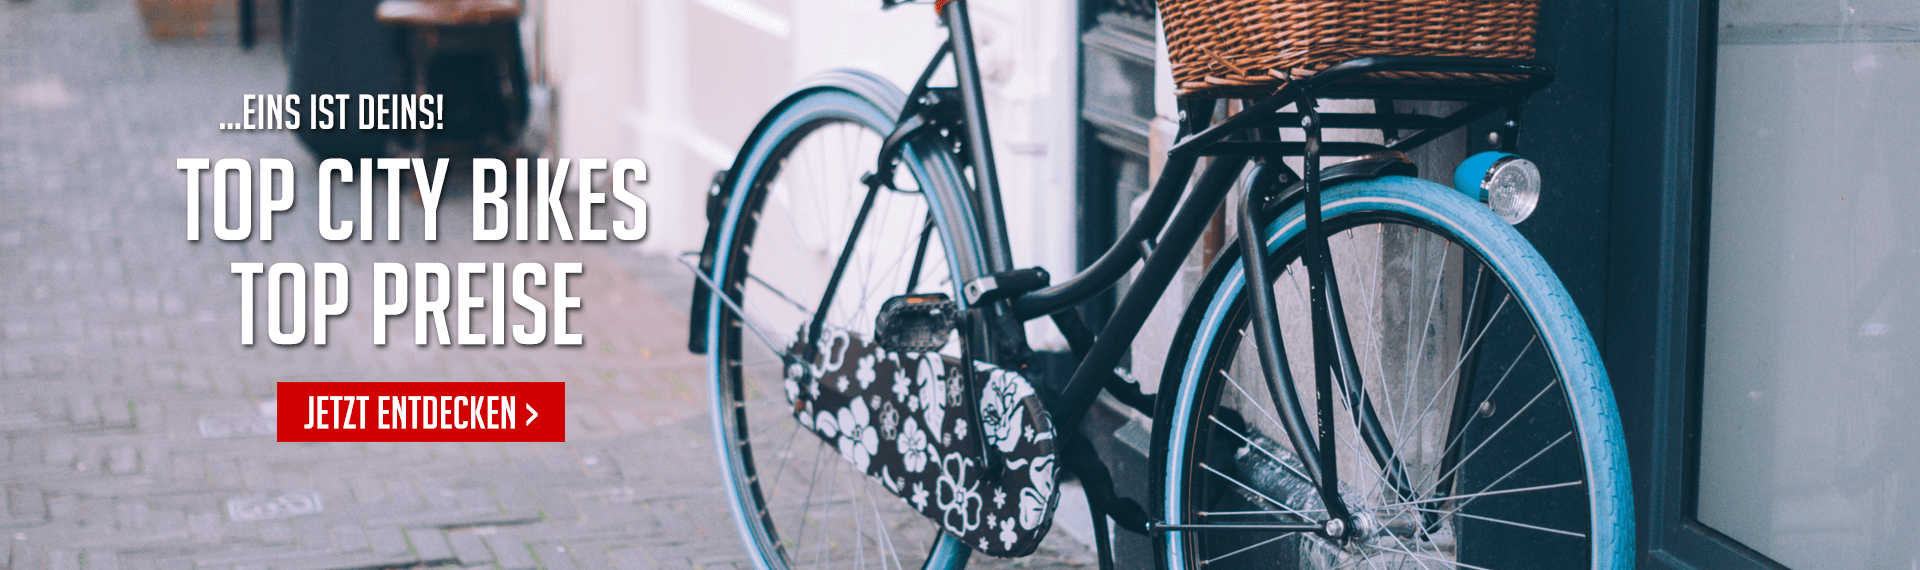 Online Shop   günstige Fahrräder und Fahrradteile